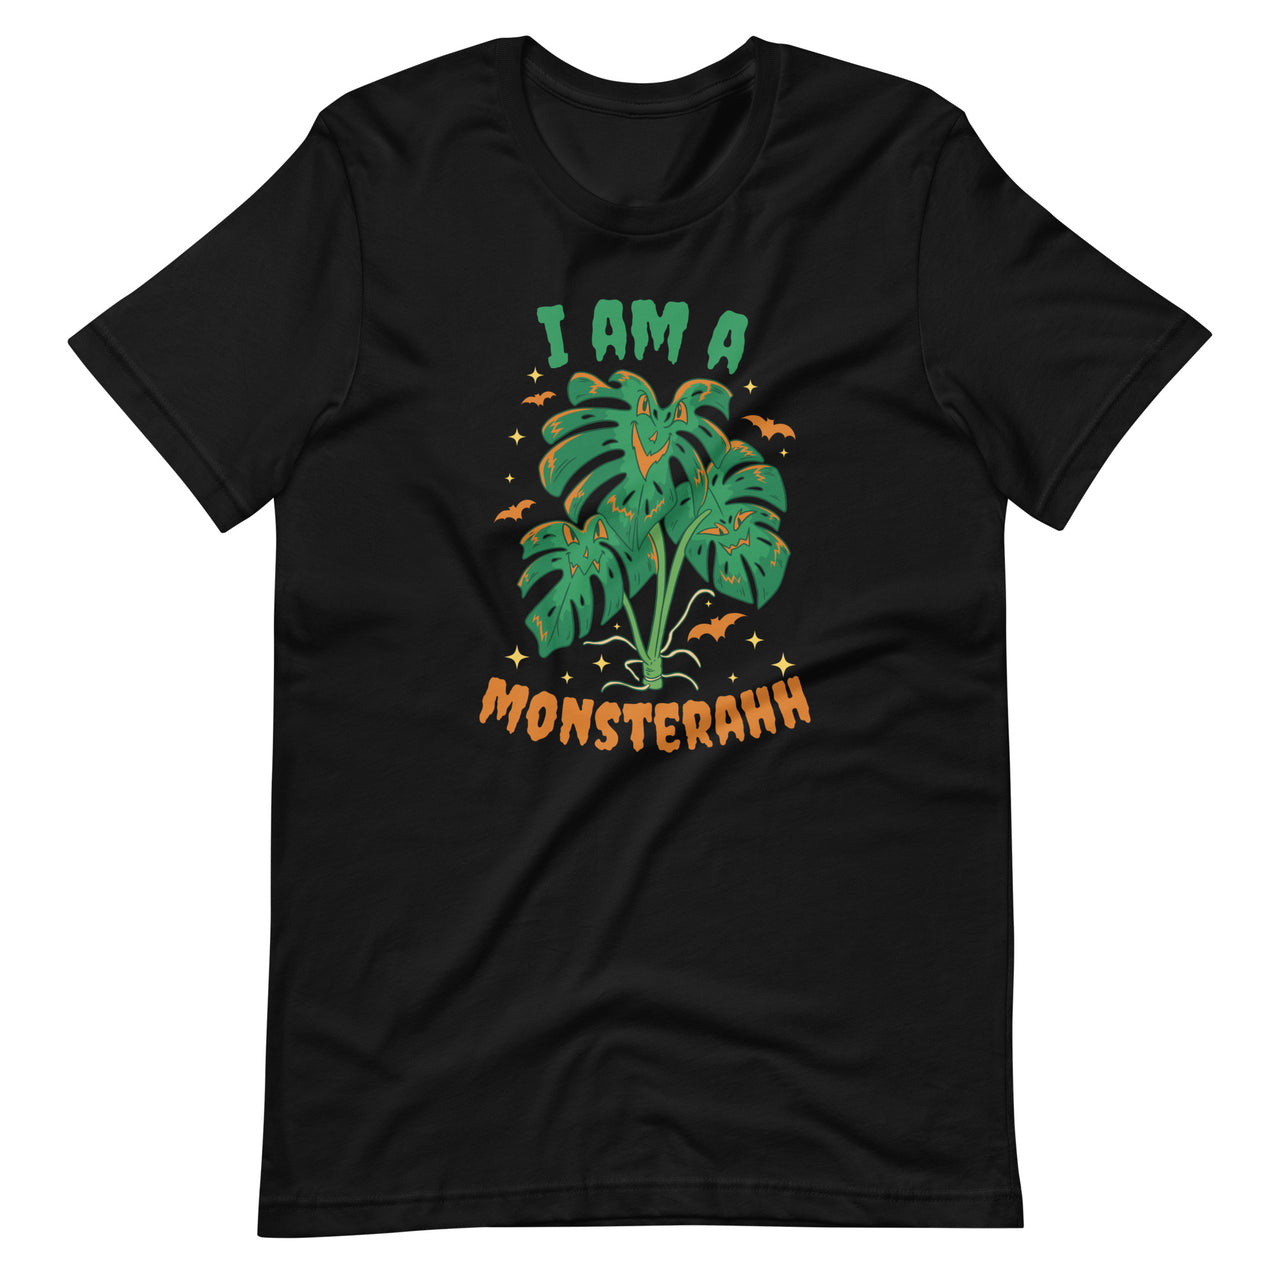 Monstera T-Shirt - I Am a Monsterahh Tee Shirt